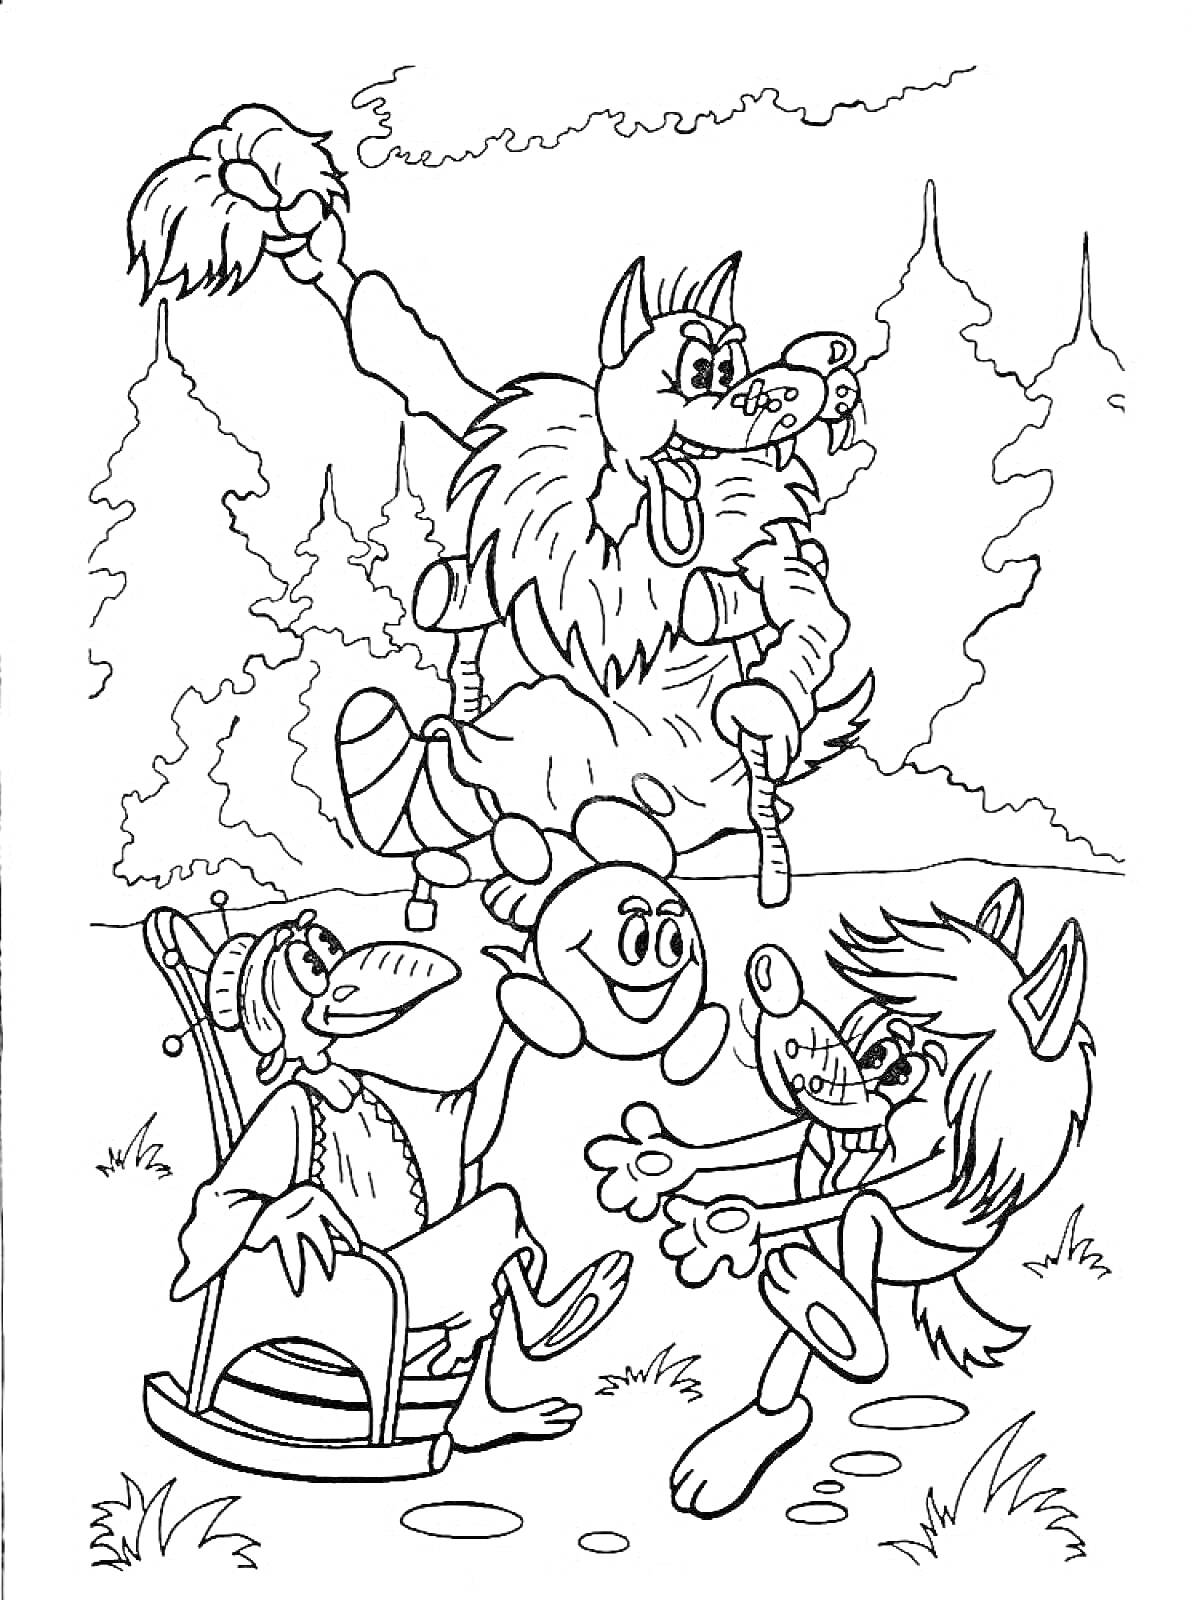 Раскраска Капитошка с лесными друзьями в лесу, один персонаж сидит в кресле-качалке, другой прыгает с Капитошкой, а на заднем плане изображен кот с мышью